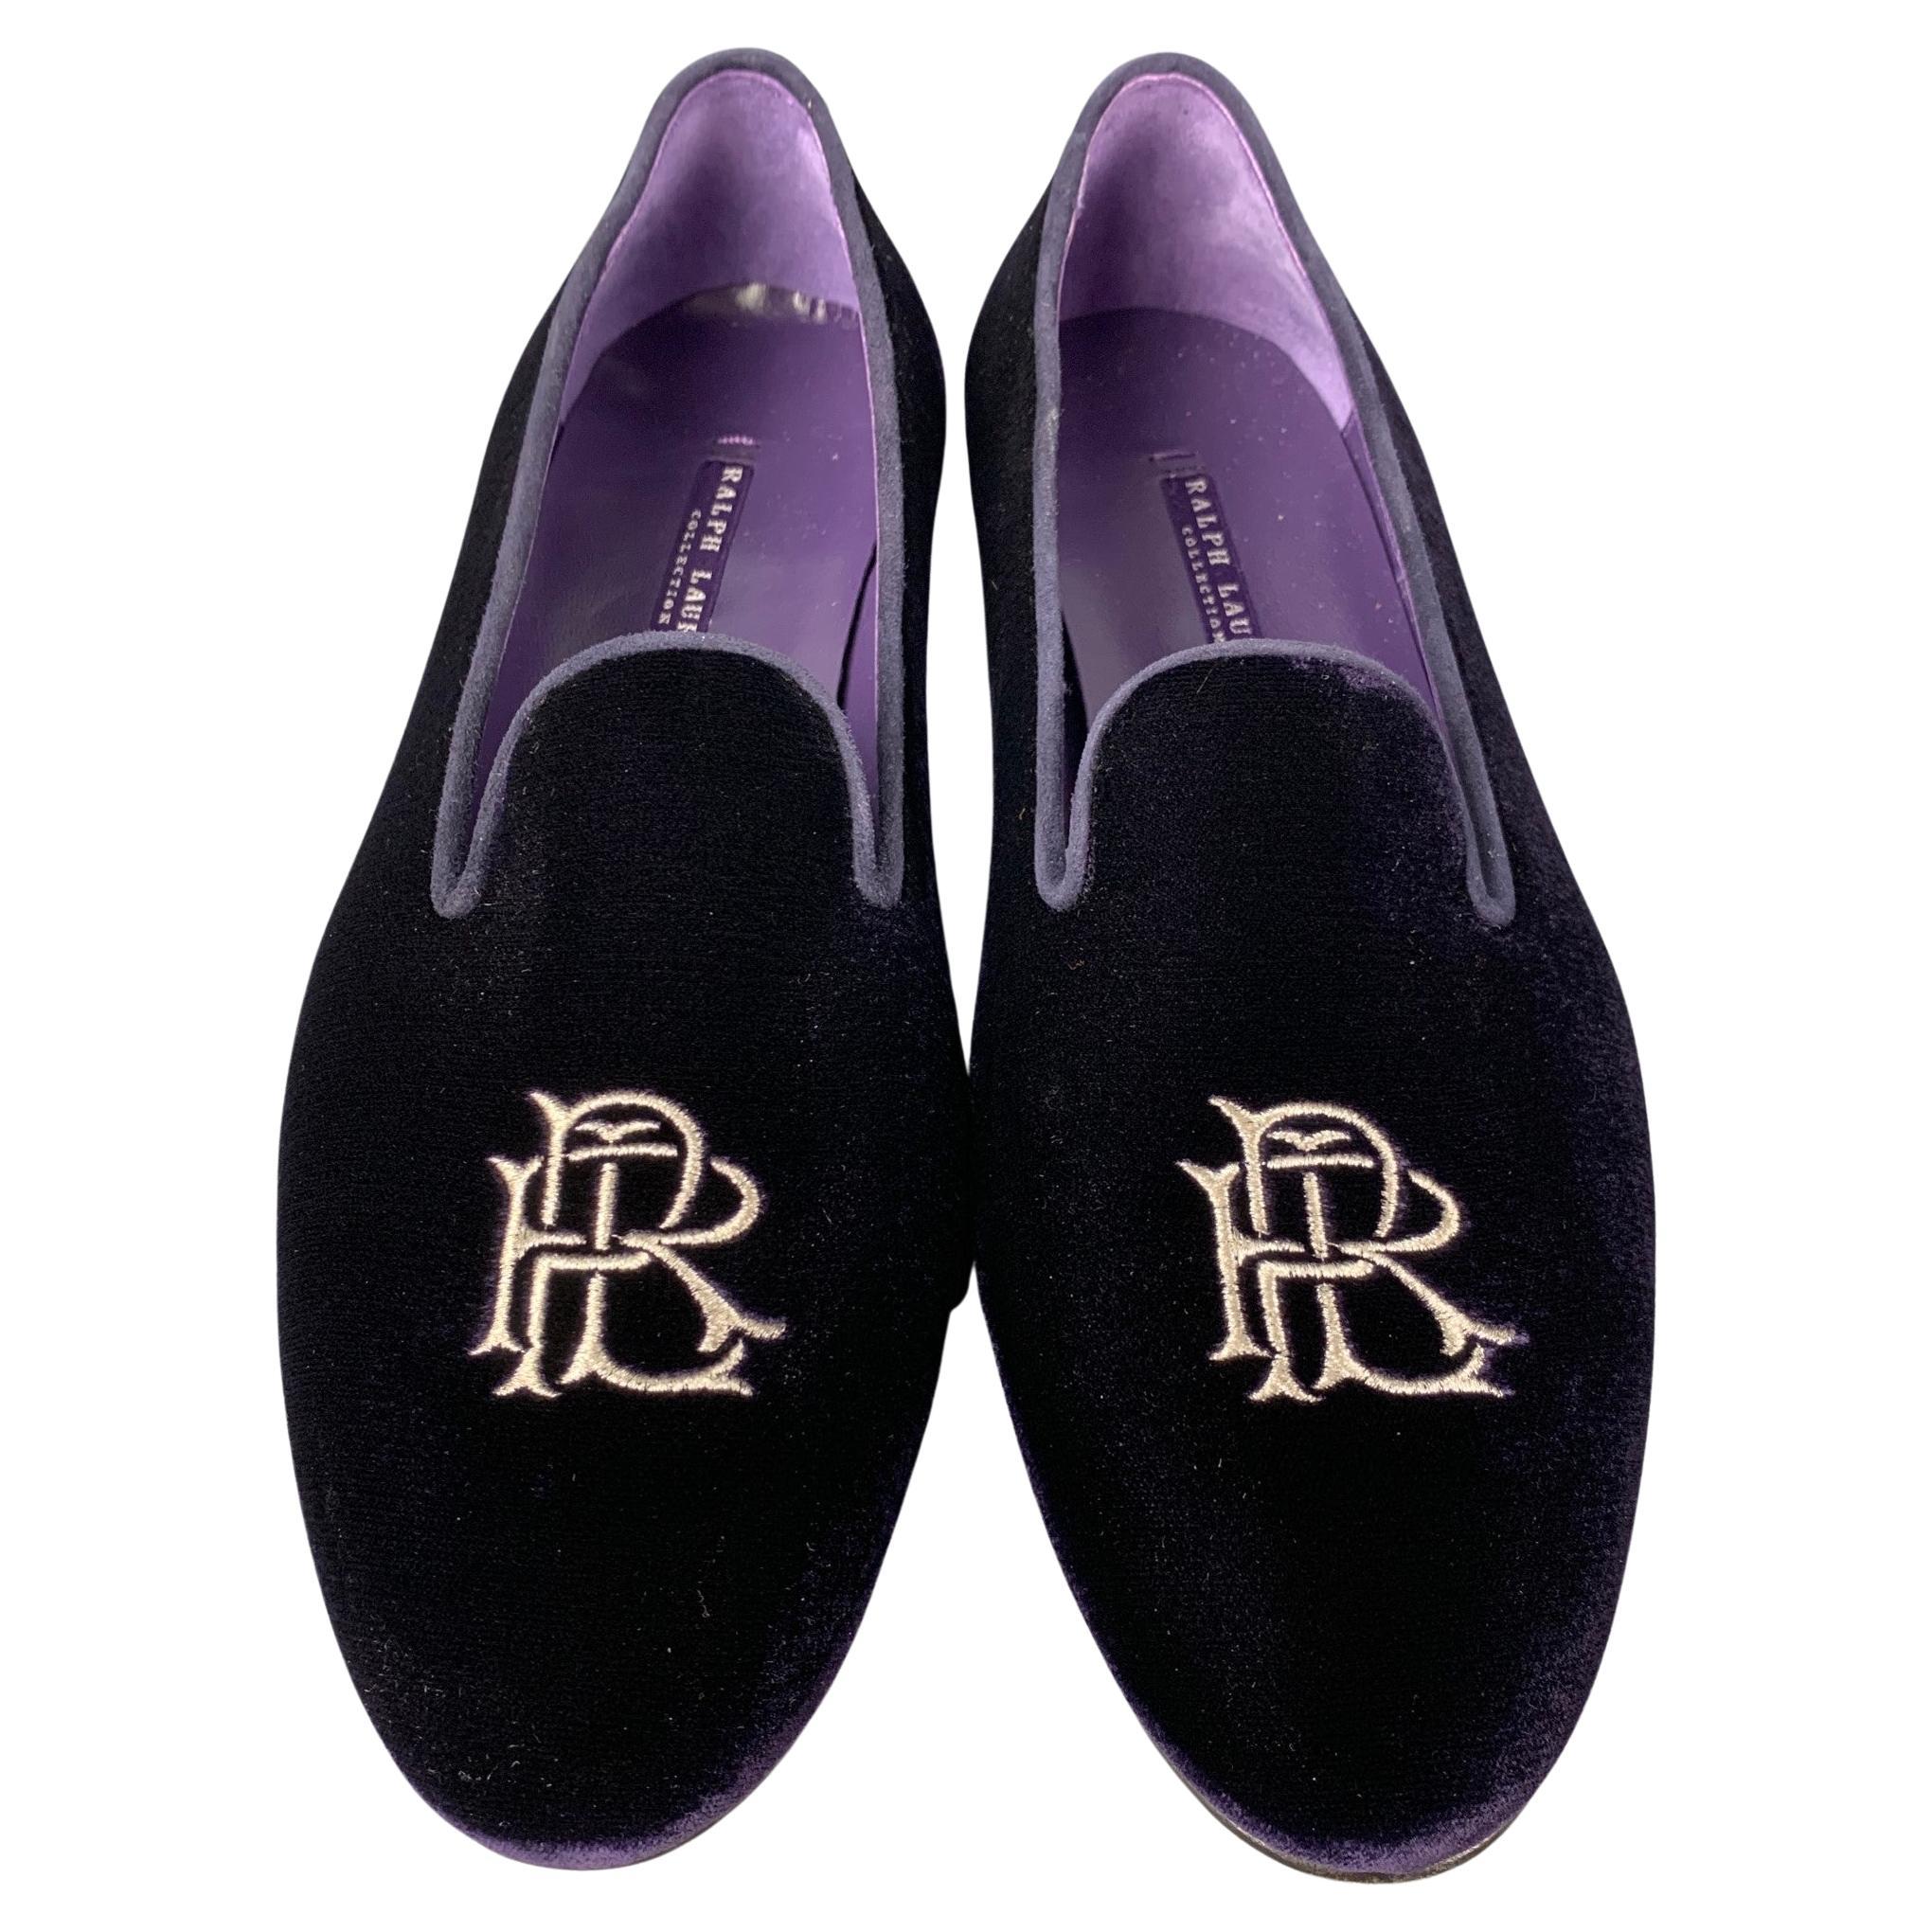 Ralph Lauren Velvet Shoes - For Sale on